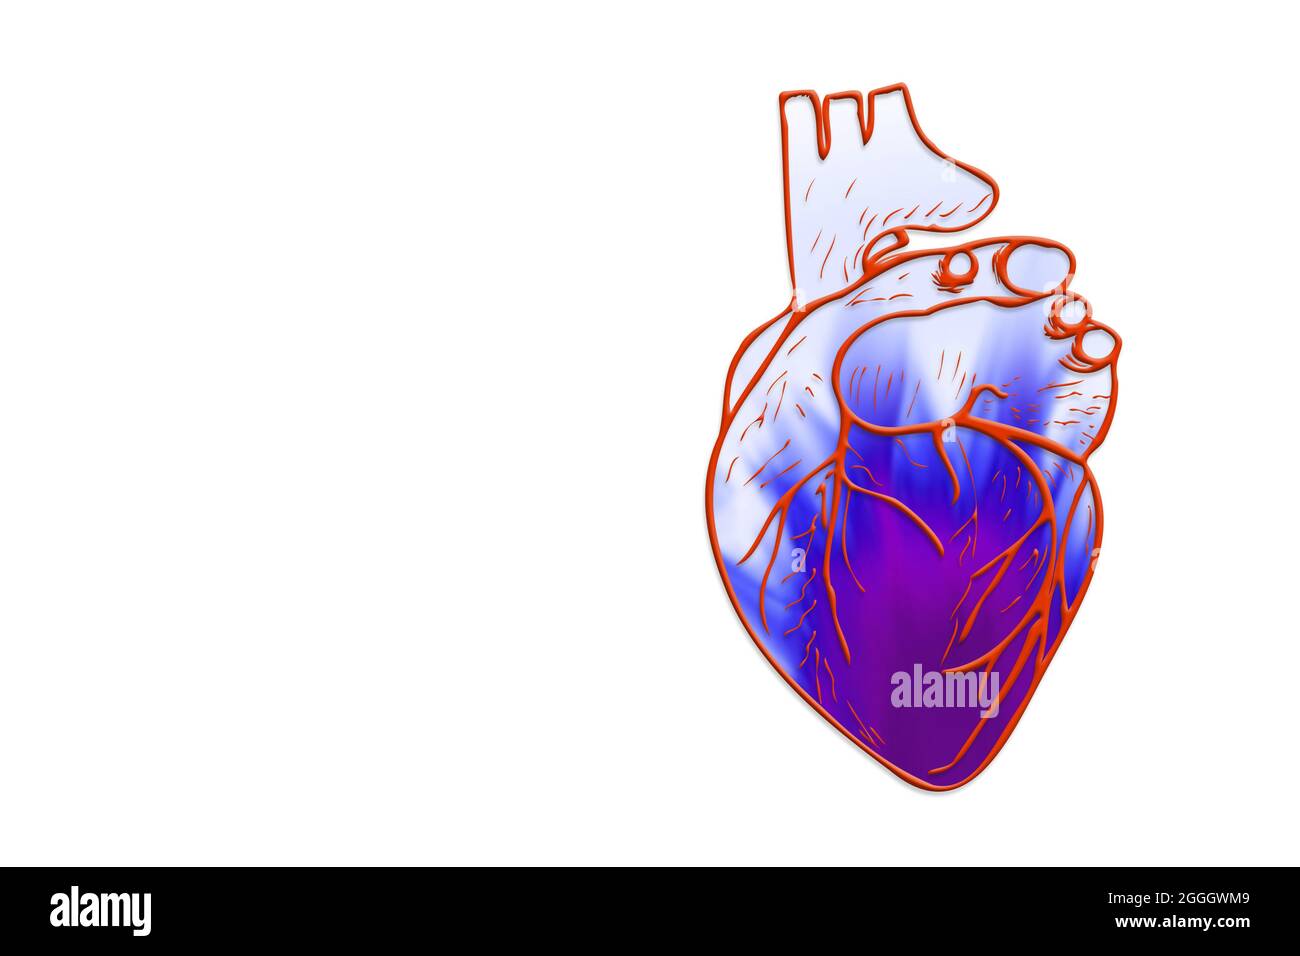 Illustrazione astratta di un cuore isolato su sfondo bianco. Foto di alta qualità Foto Stock